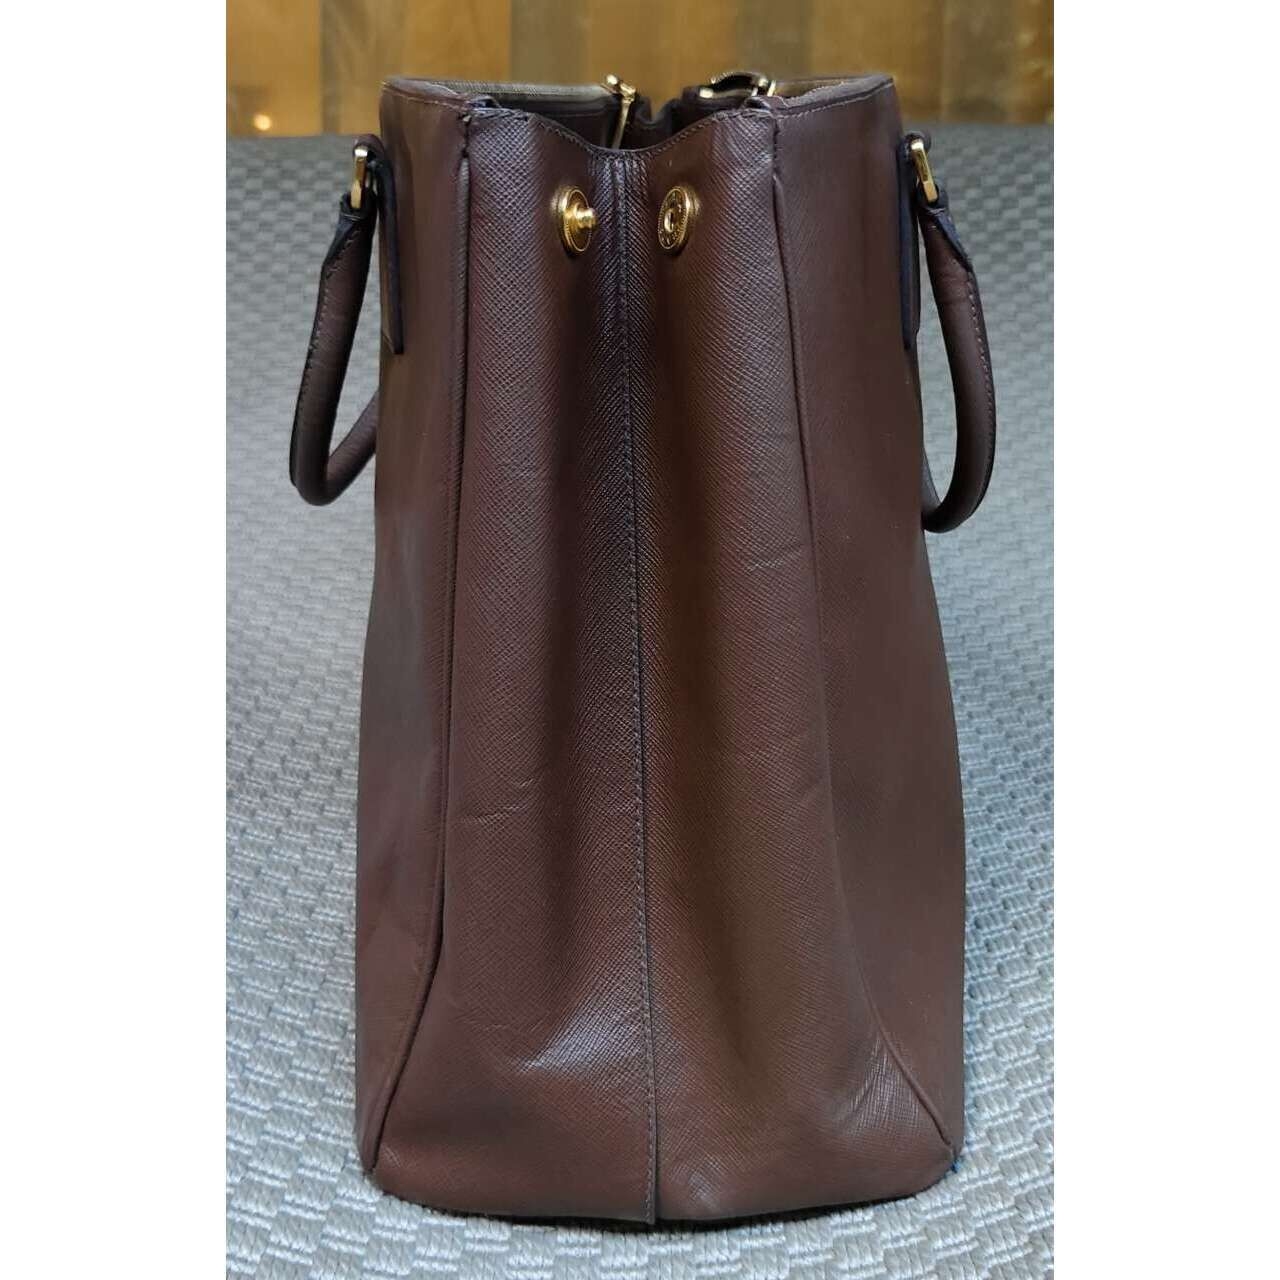 Prada Saffiano Lux Handbag